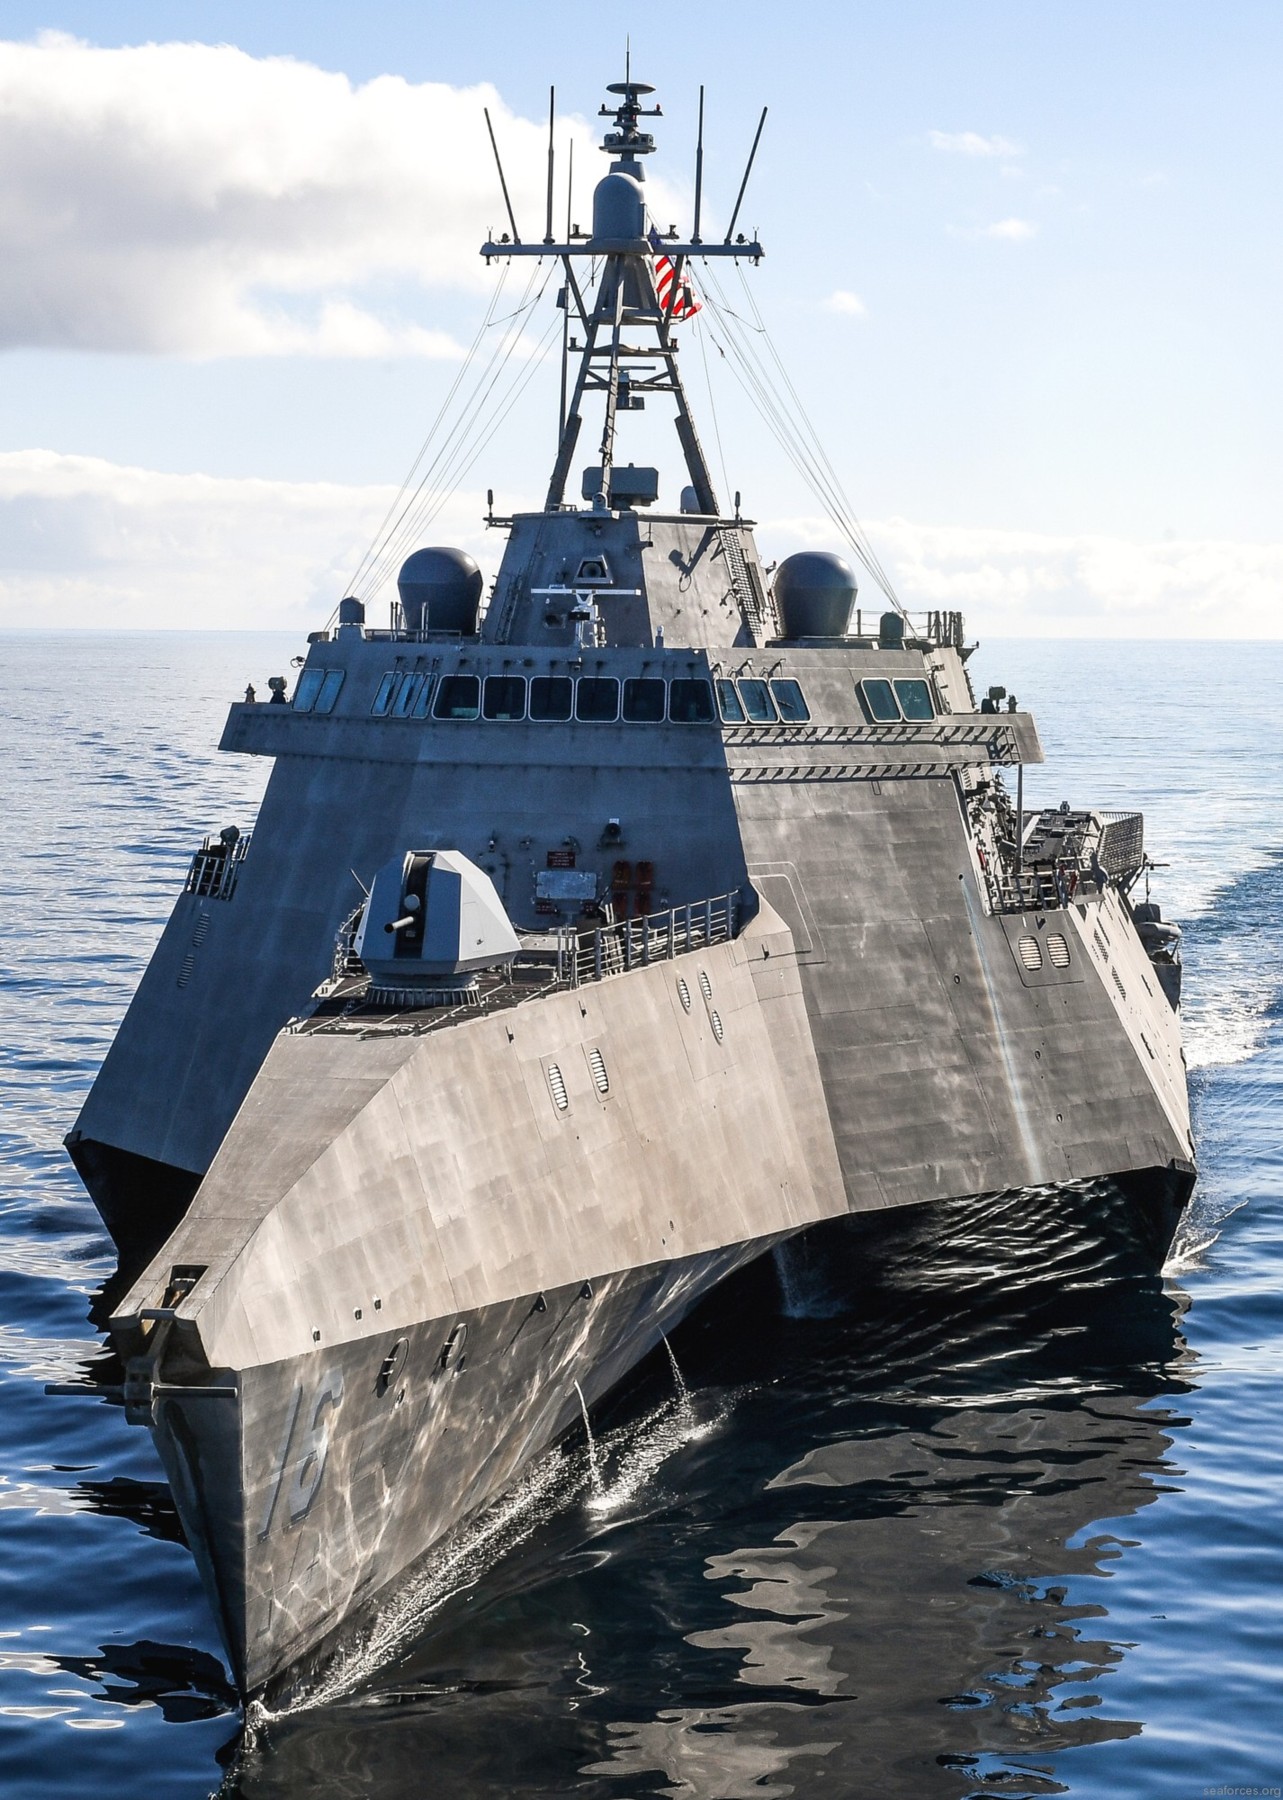 lcs-16 uss tulsa littoral combat ship independence class us navy 15